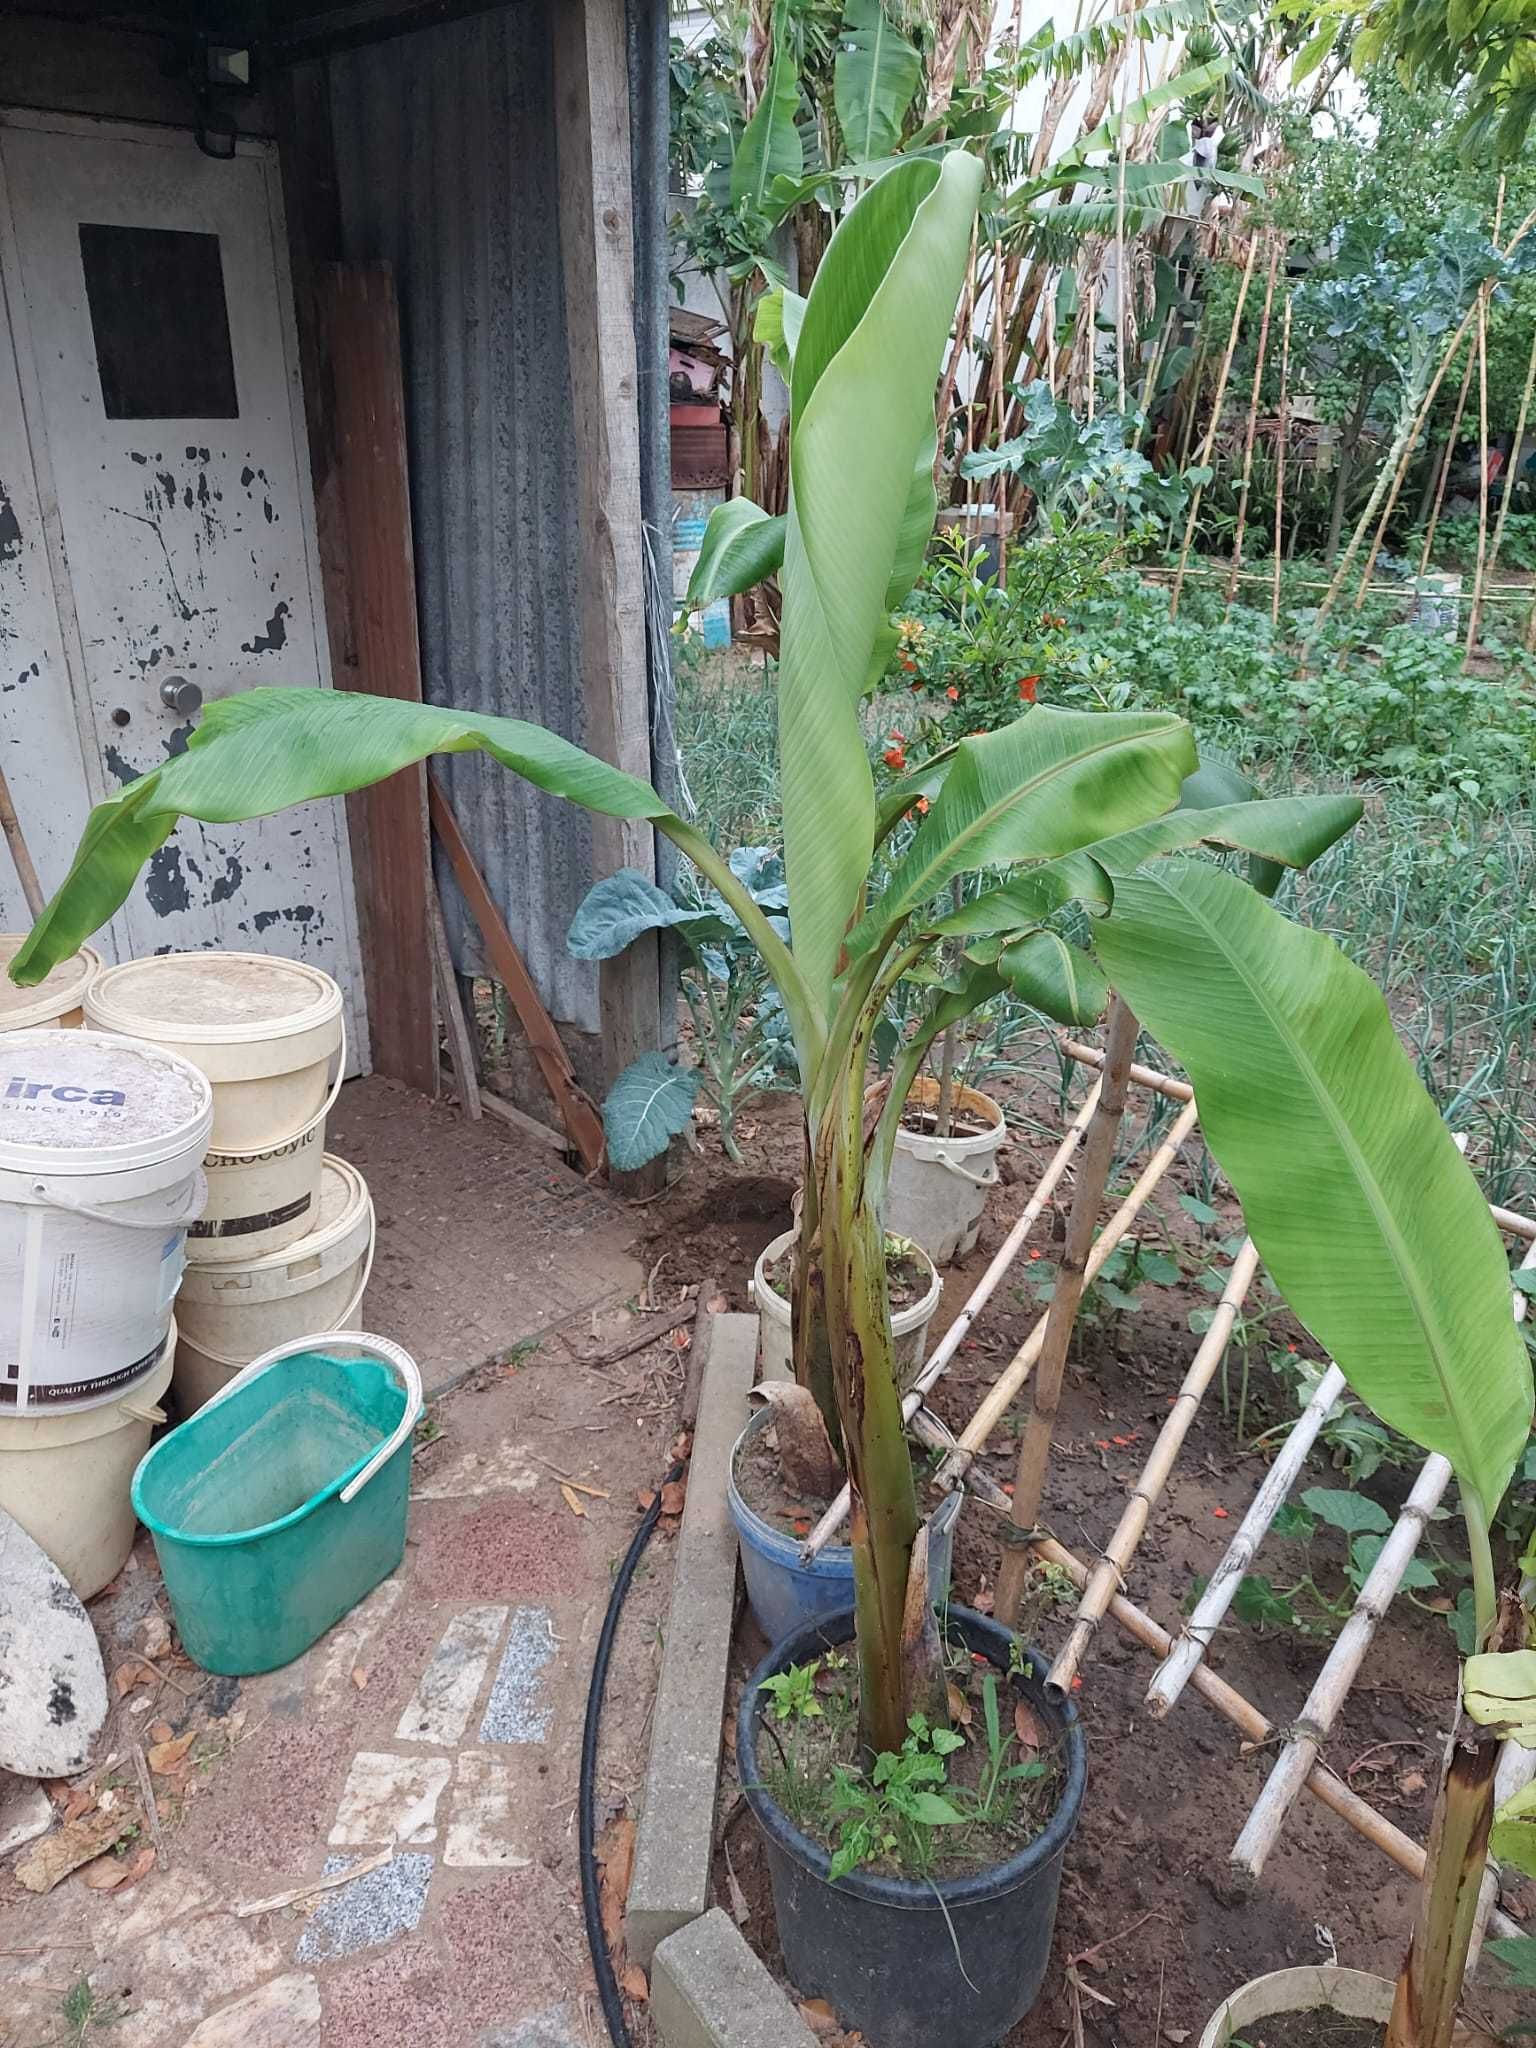 Plantas de bananeiras com vários tamanhos